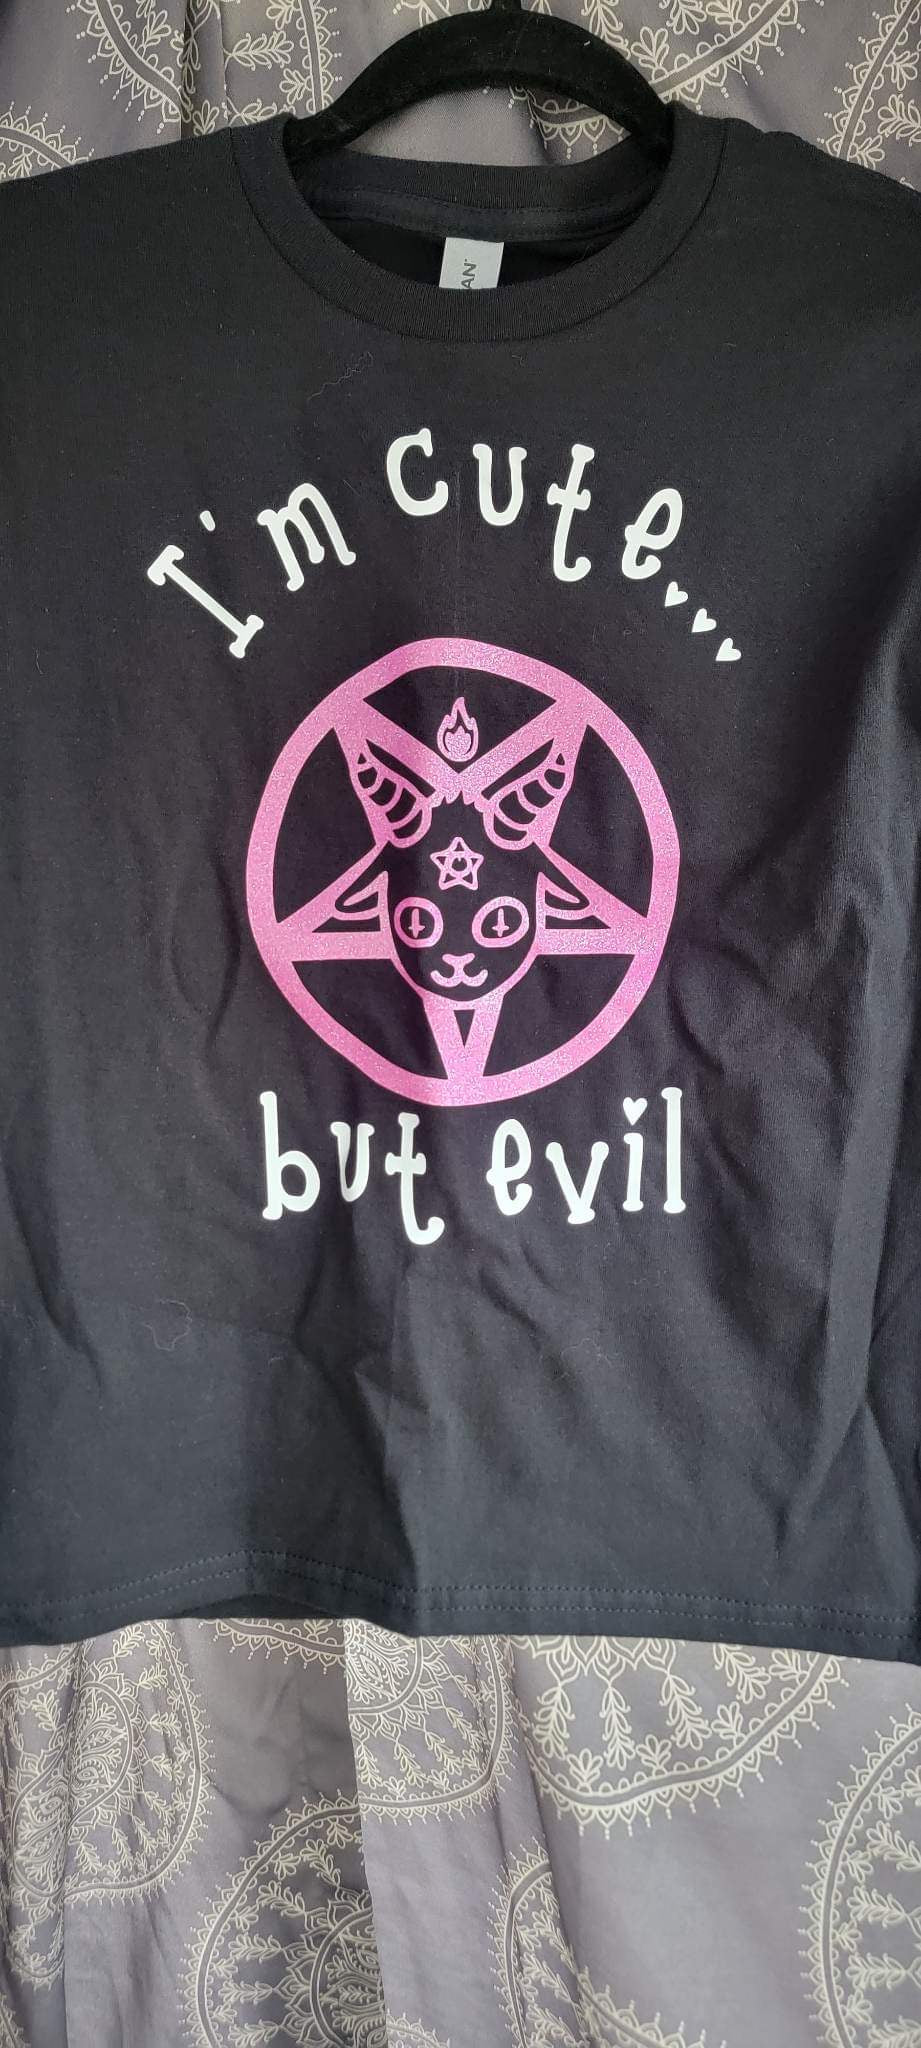 I’m Cute but Evil t-shirt